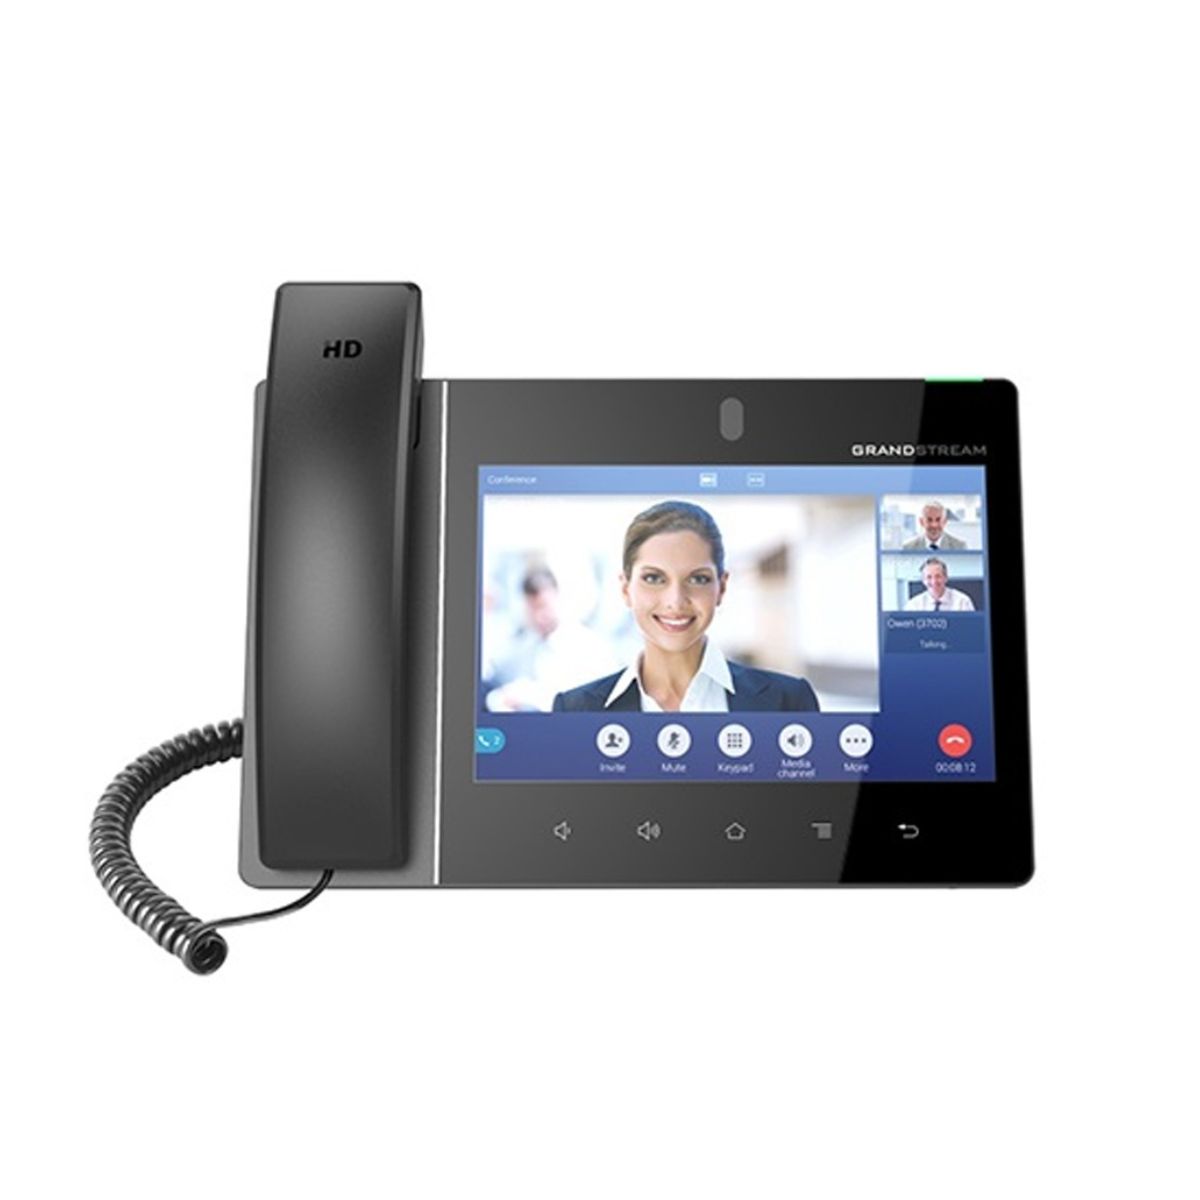 Điện thoại VoIP Wifi Video Grandstream GXV3380 2 cổng mạng Gigabit, màn hình 8 inch, 16 tài khoản SIP